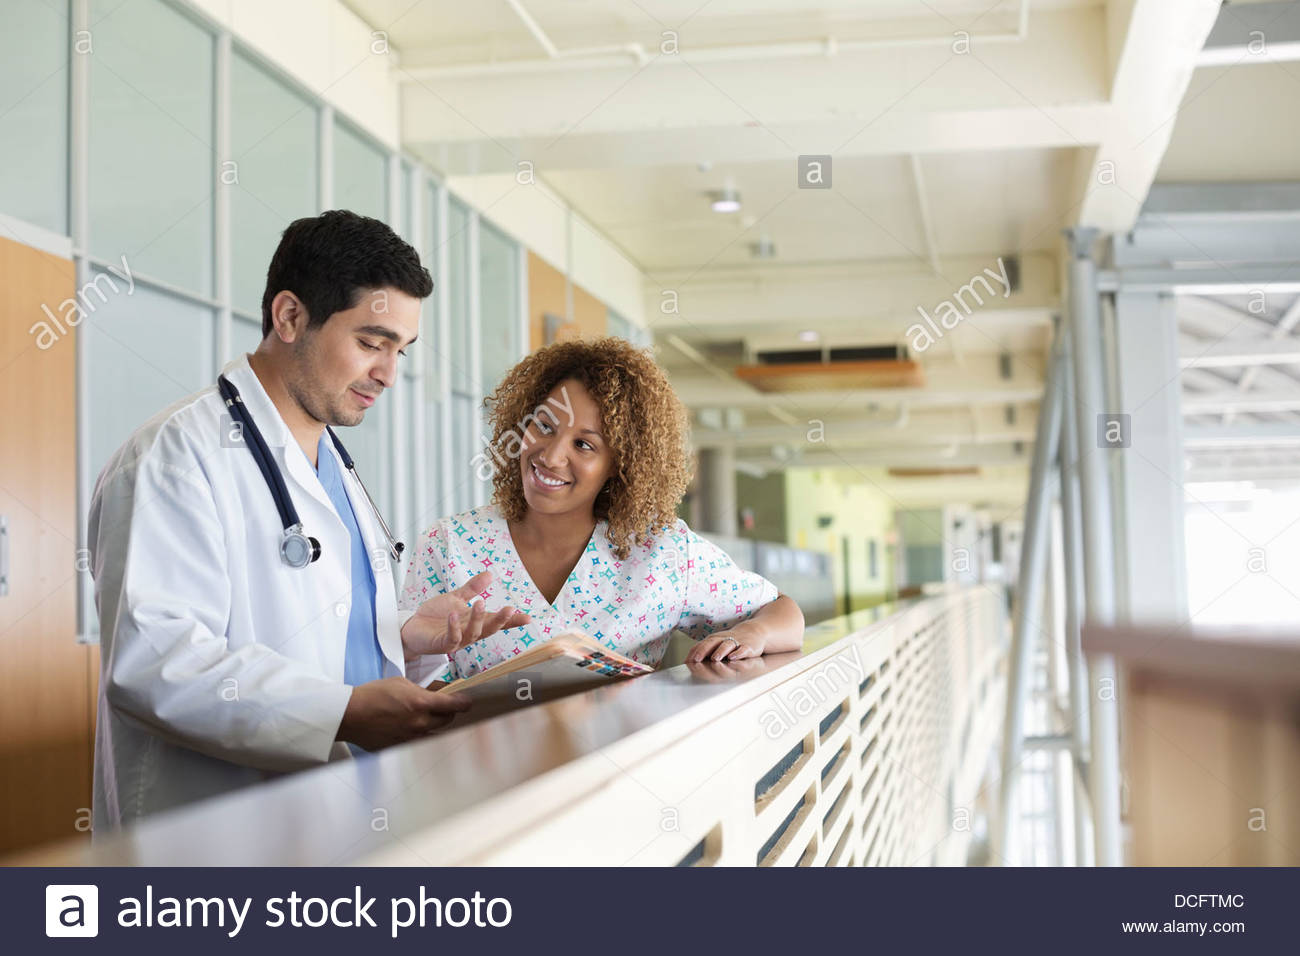 Los profesionales médicos discutiendo la información del paciente Foto de stock